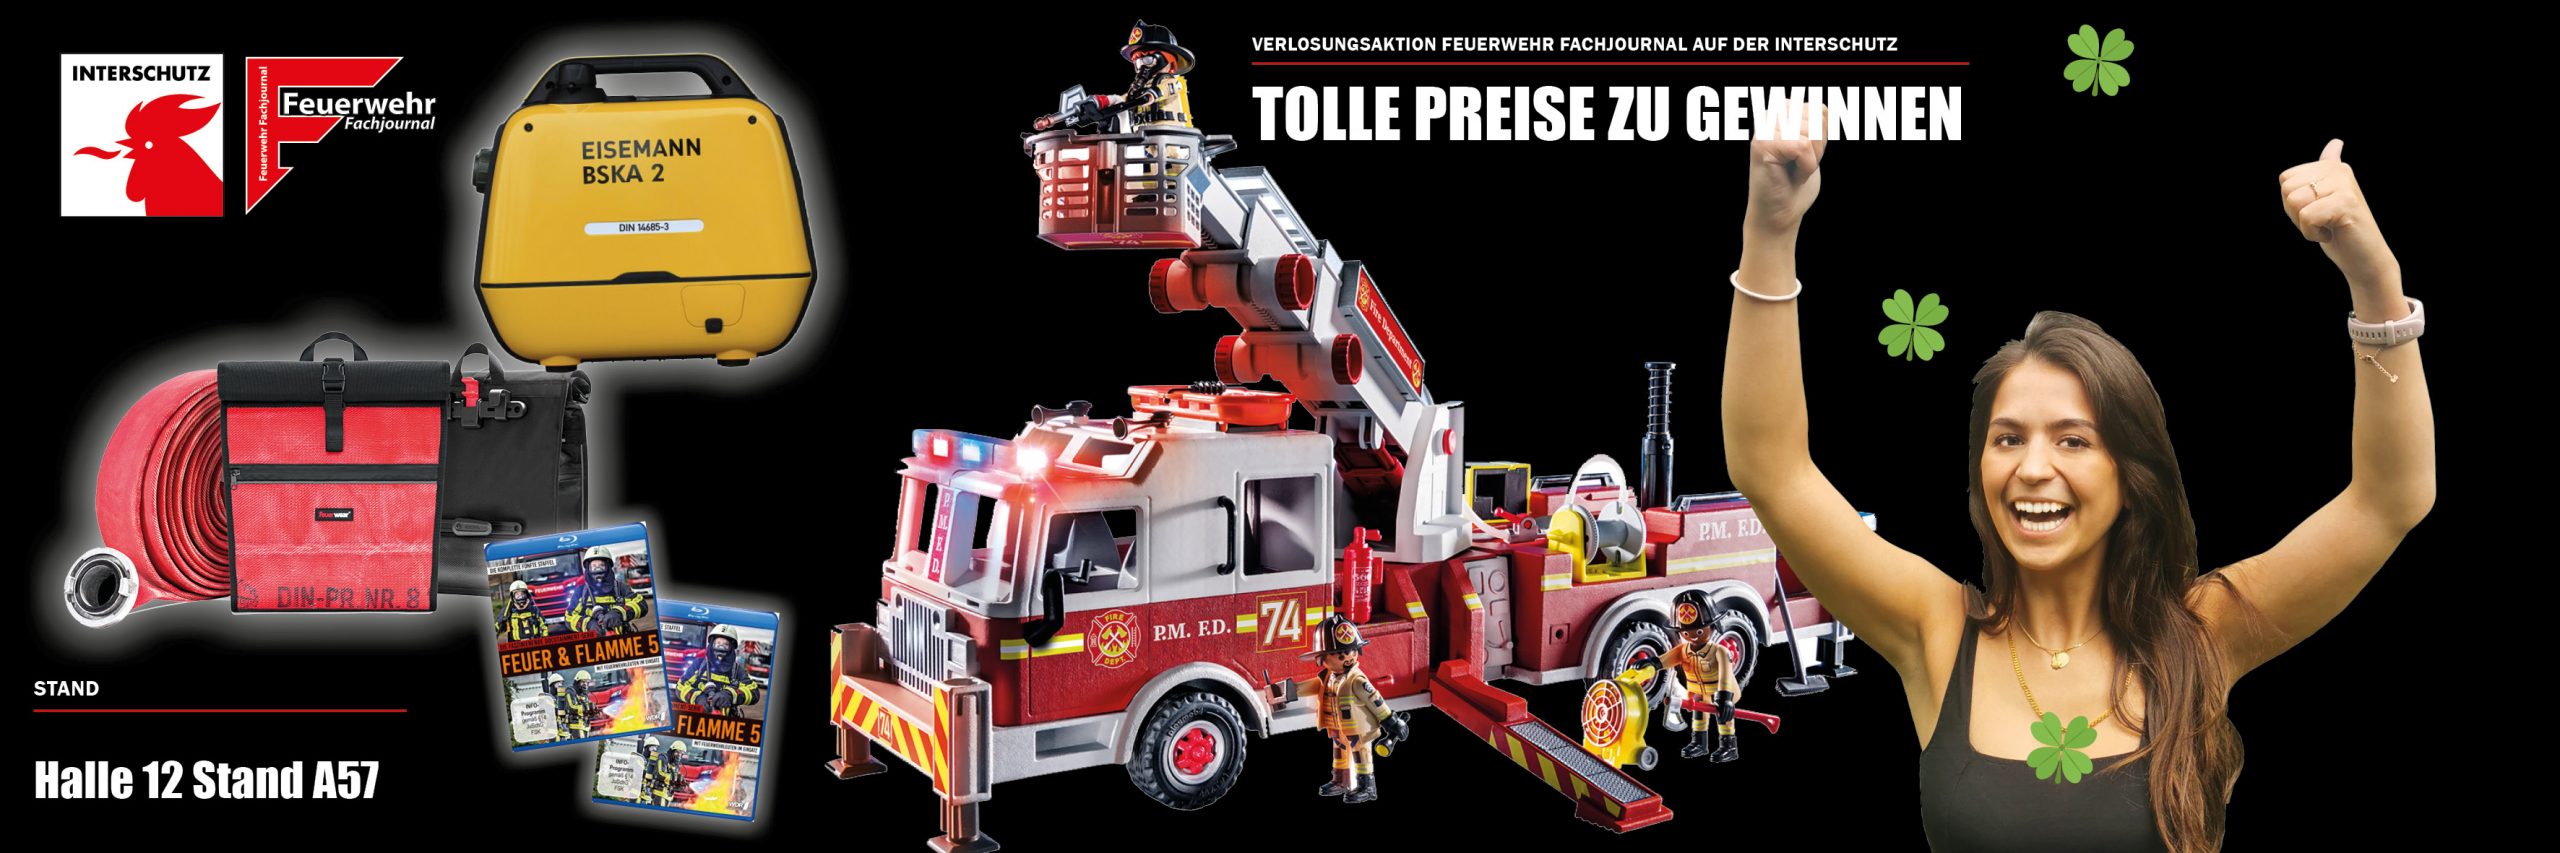 INTERSCHUTZ: Verlosung auf dem Stand Feuerwehr Fachjournal